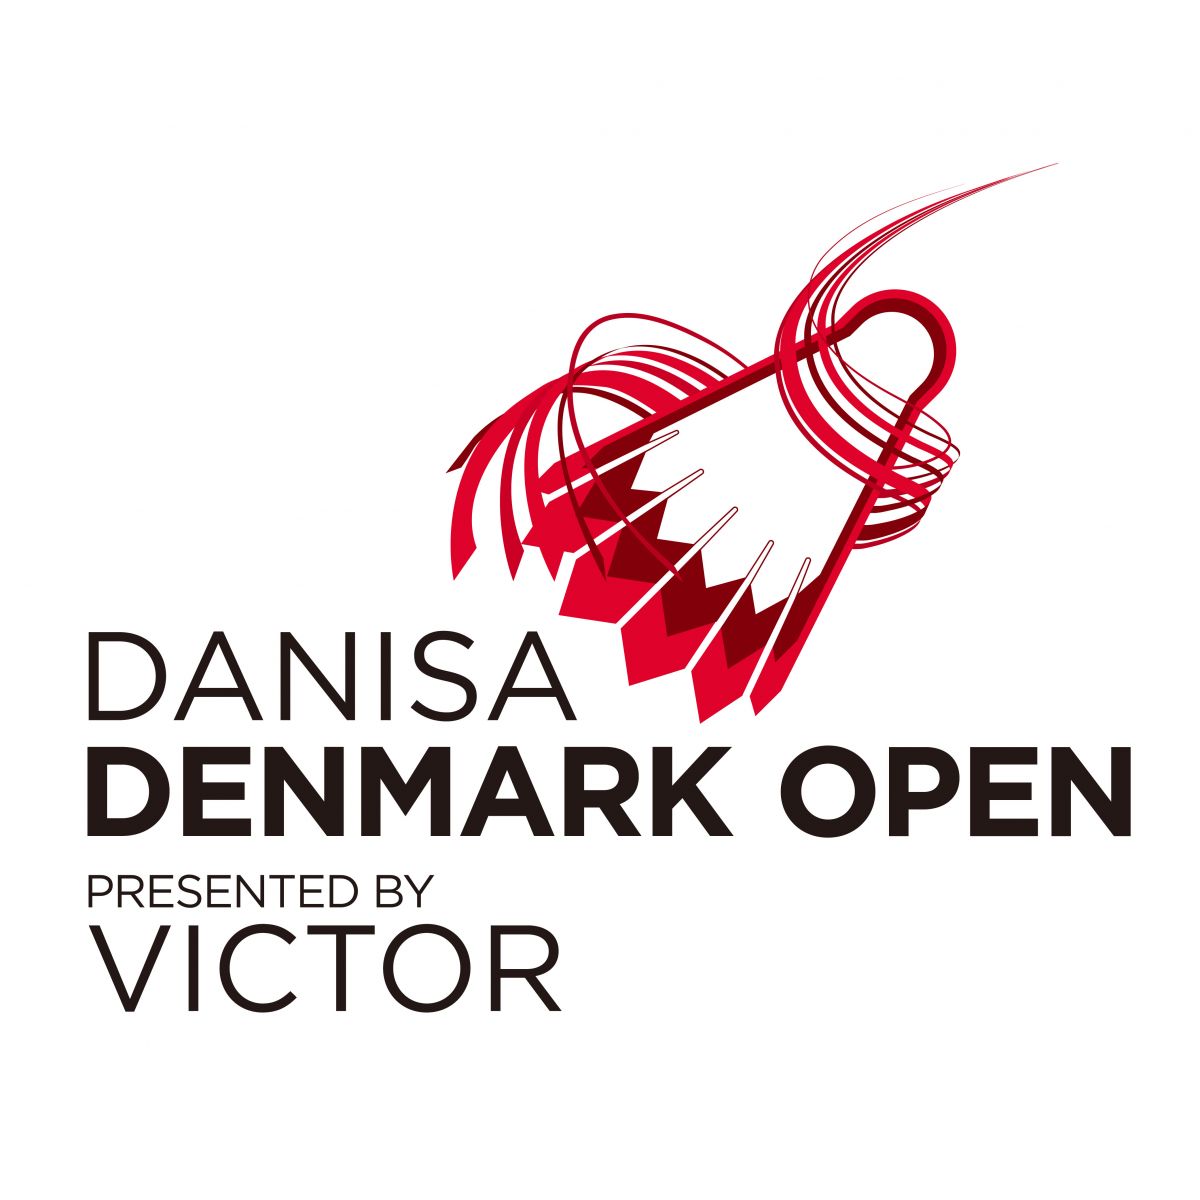 Victor denmark open 2021 schedule